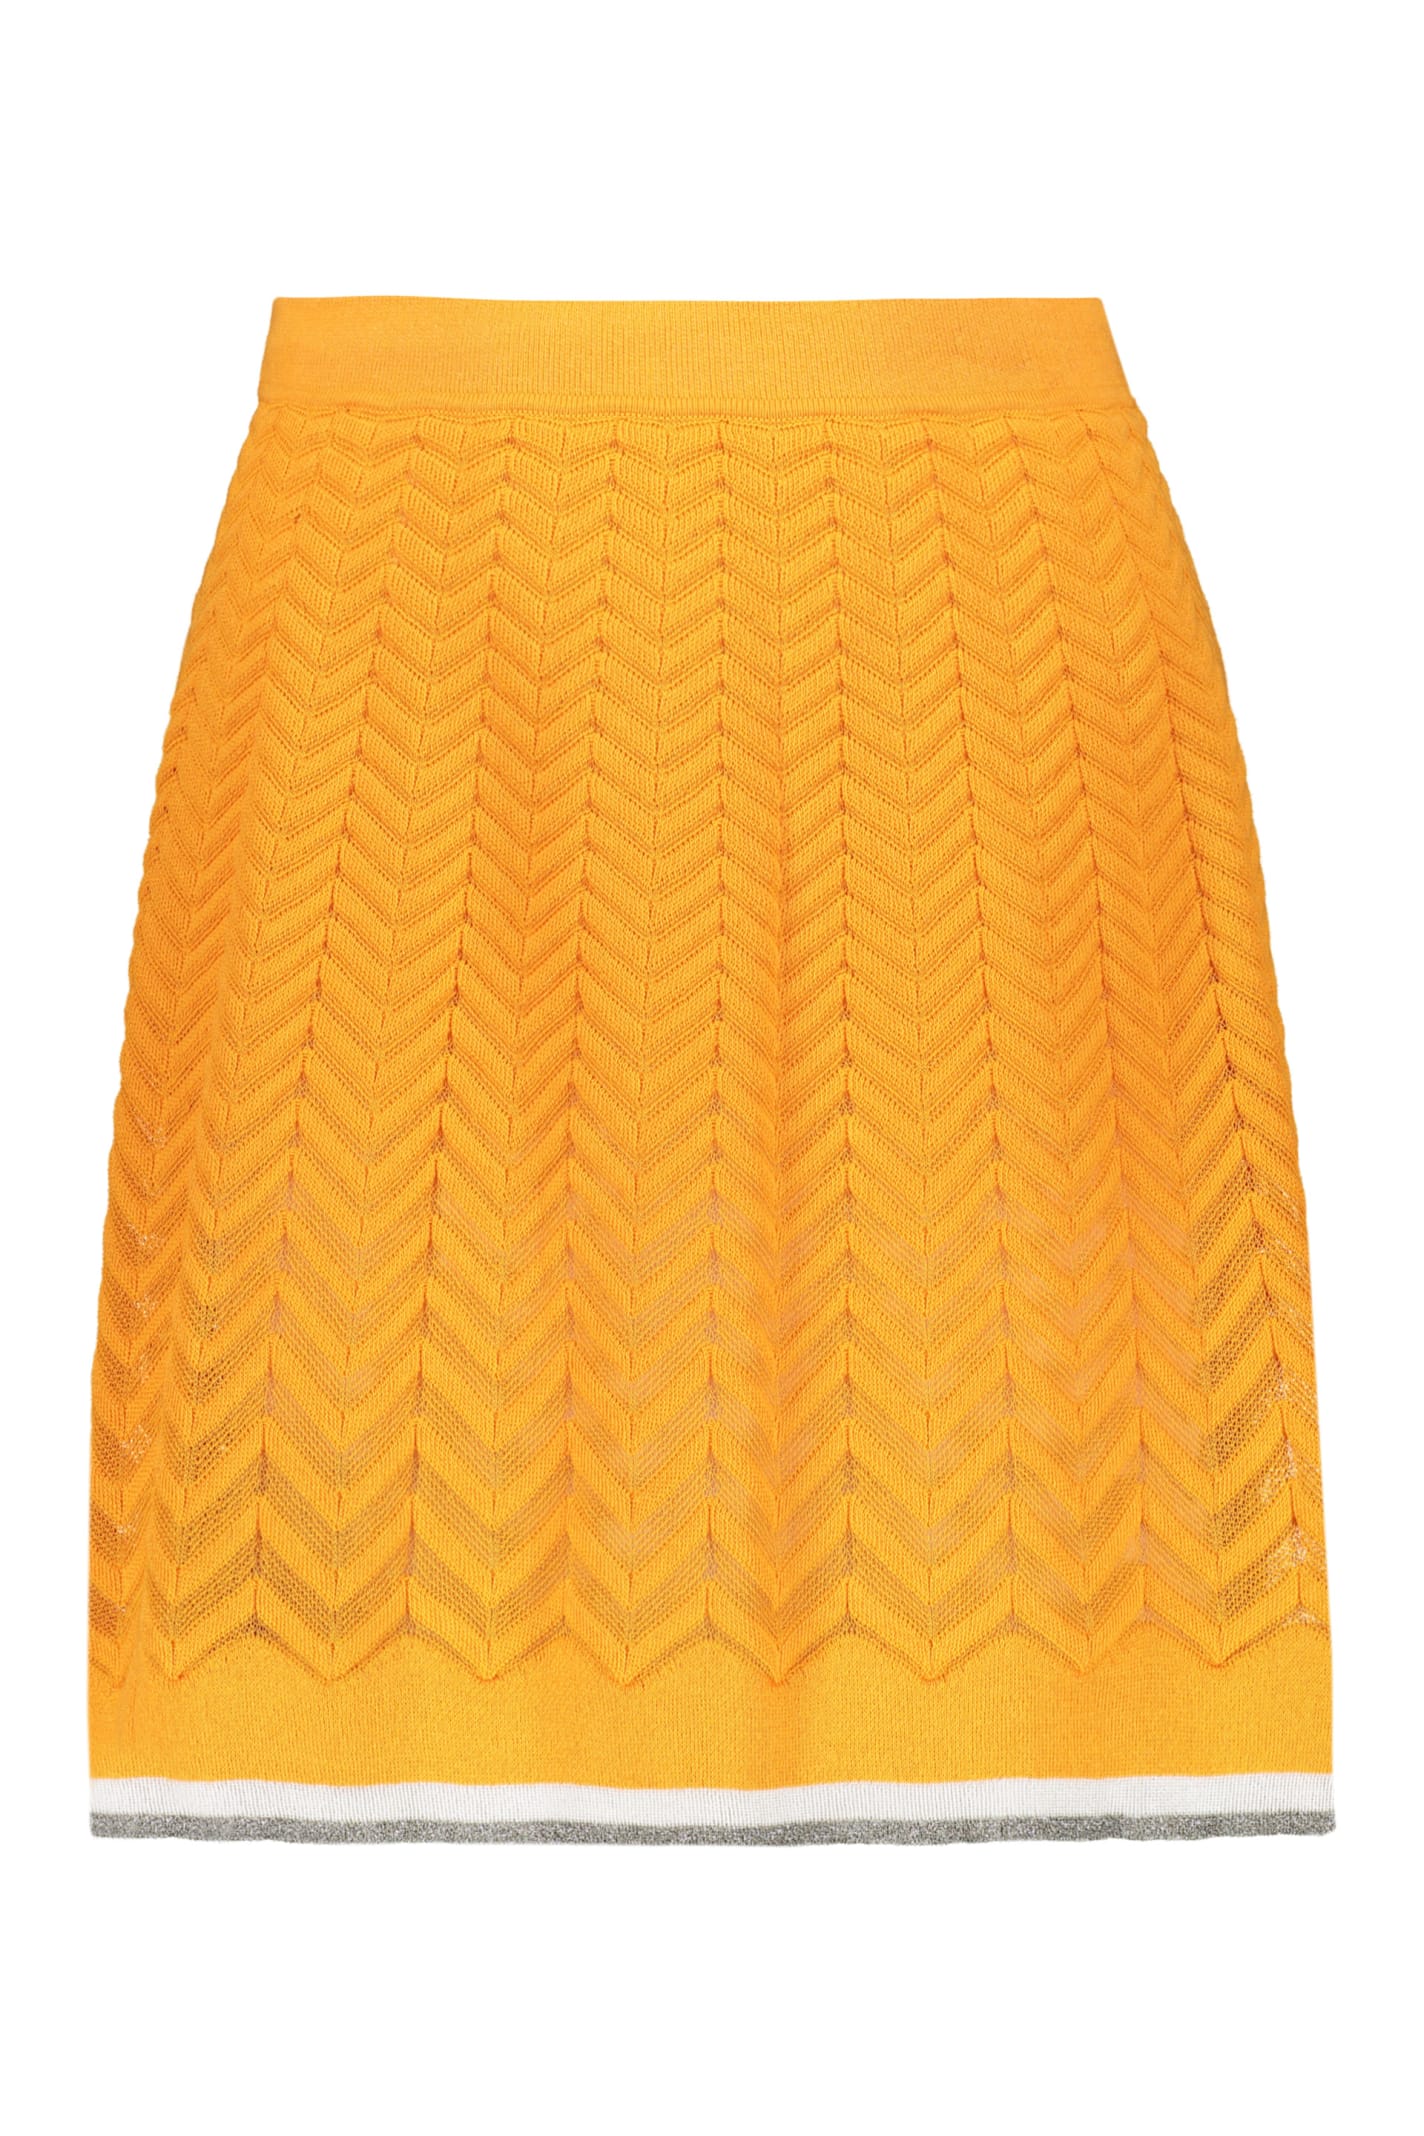 Missoni Knit Skirt In Orange